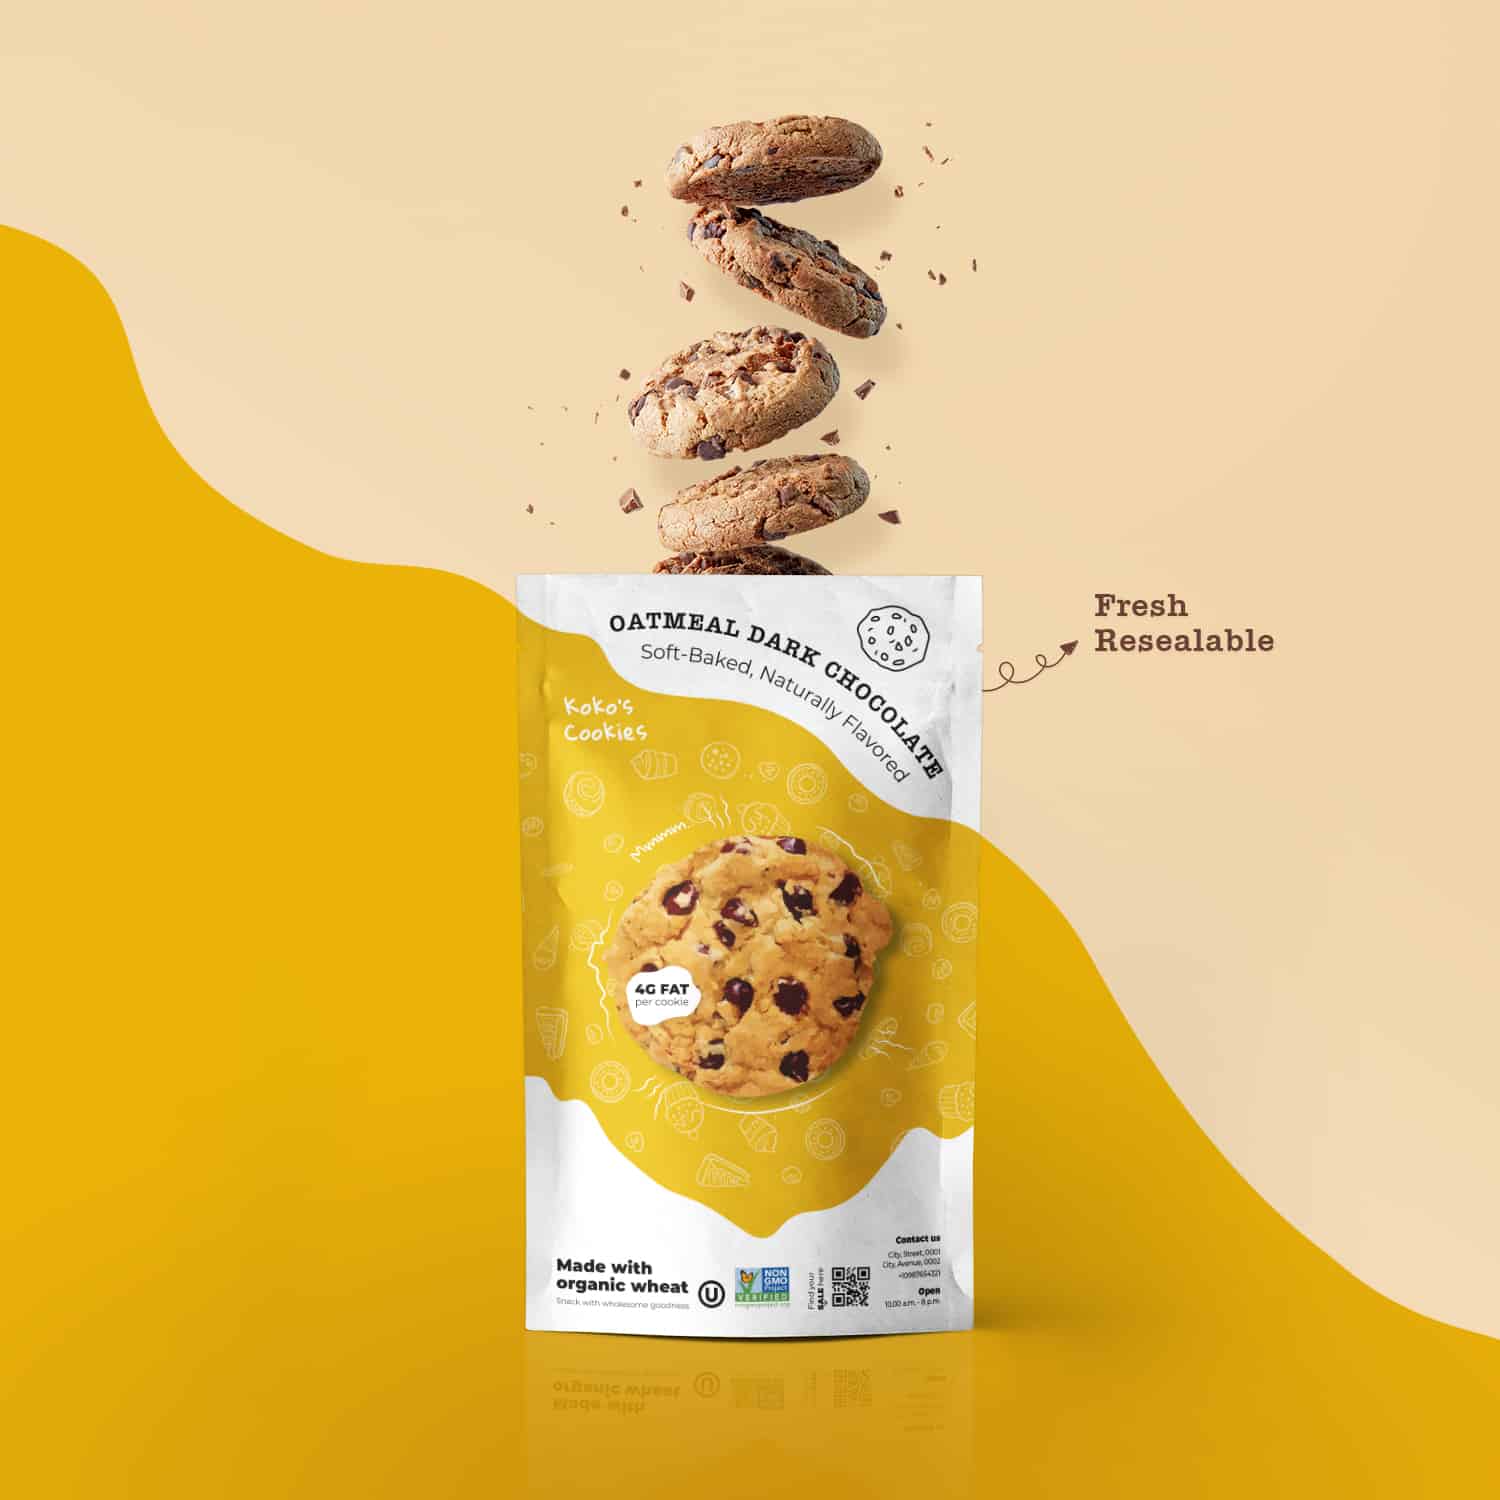 8 Best Cookie Packaging Ideas in 2022